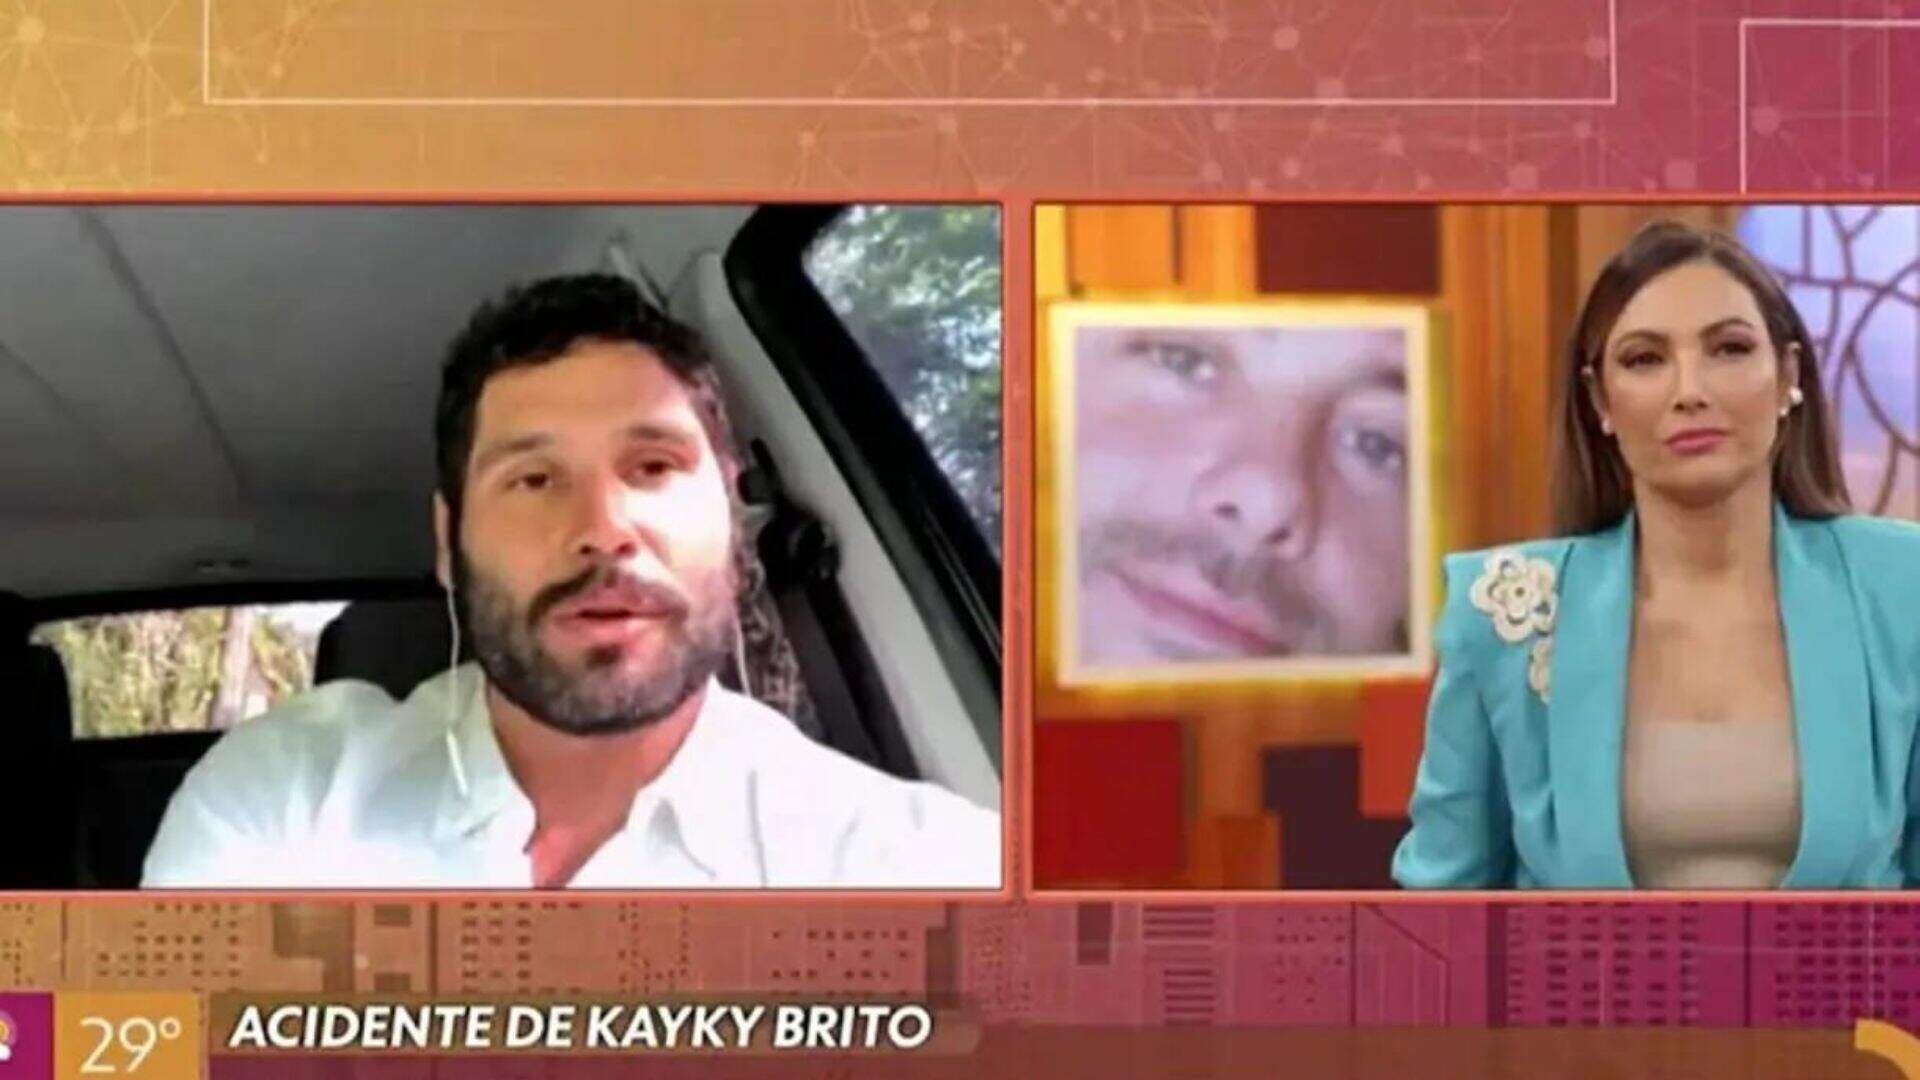 Dudu Azevedo entra ao vivo no ‘Encontro’ e emociona ao revelar estado de saúde de Kayky Brito - Metropolitana FM